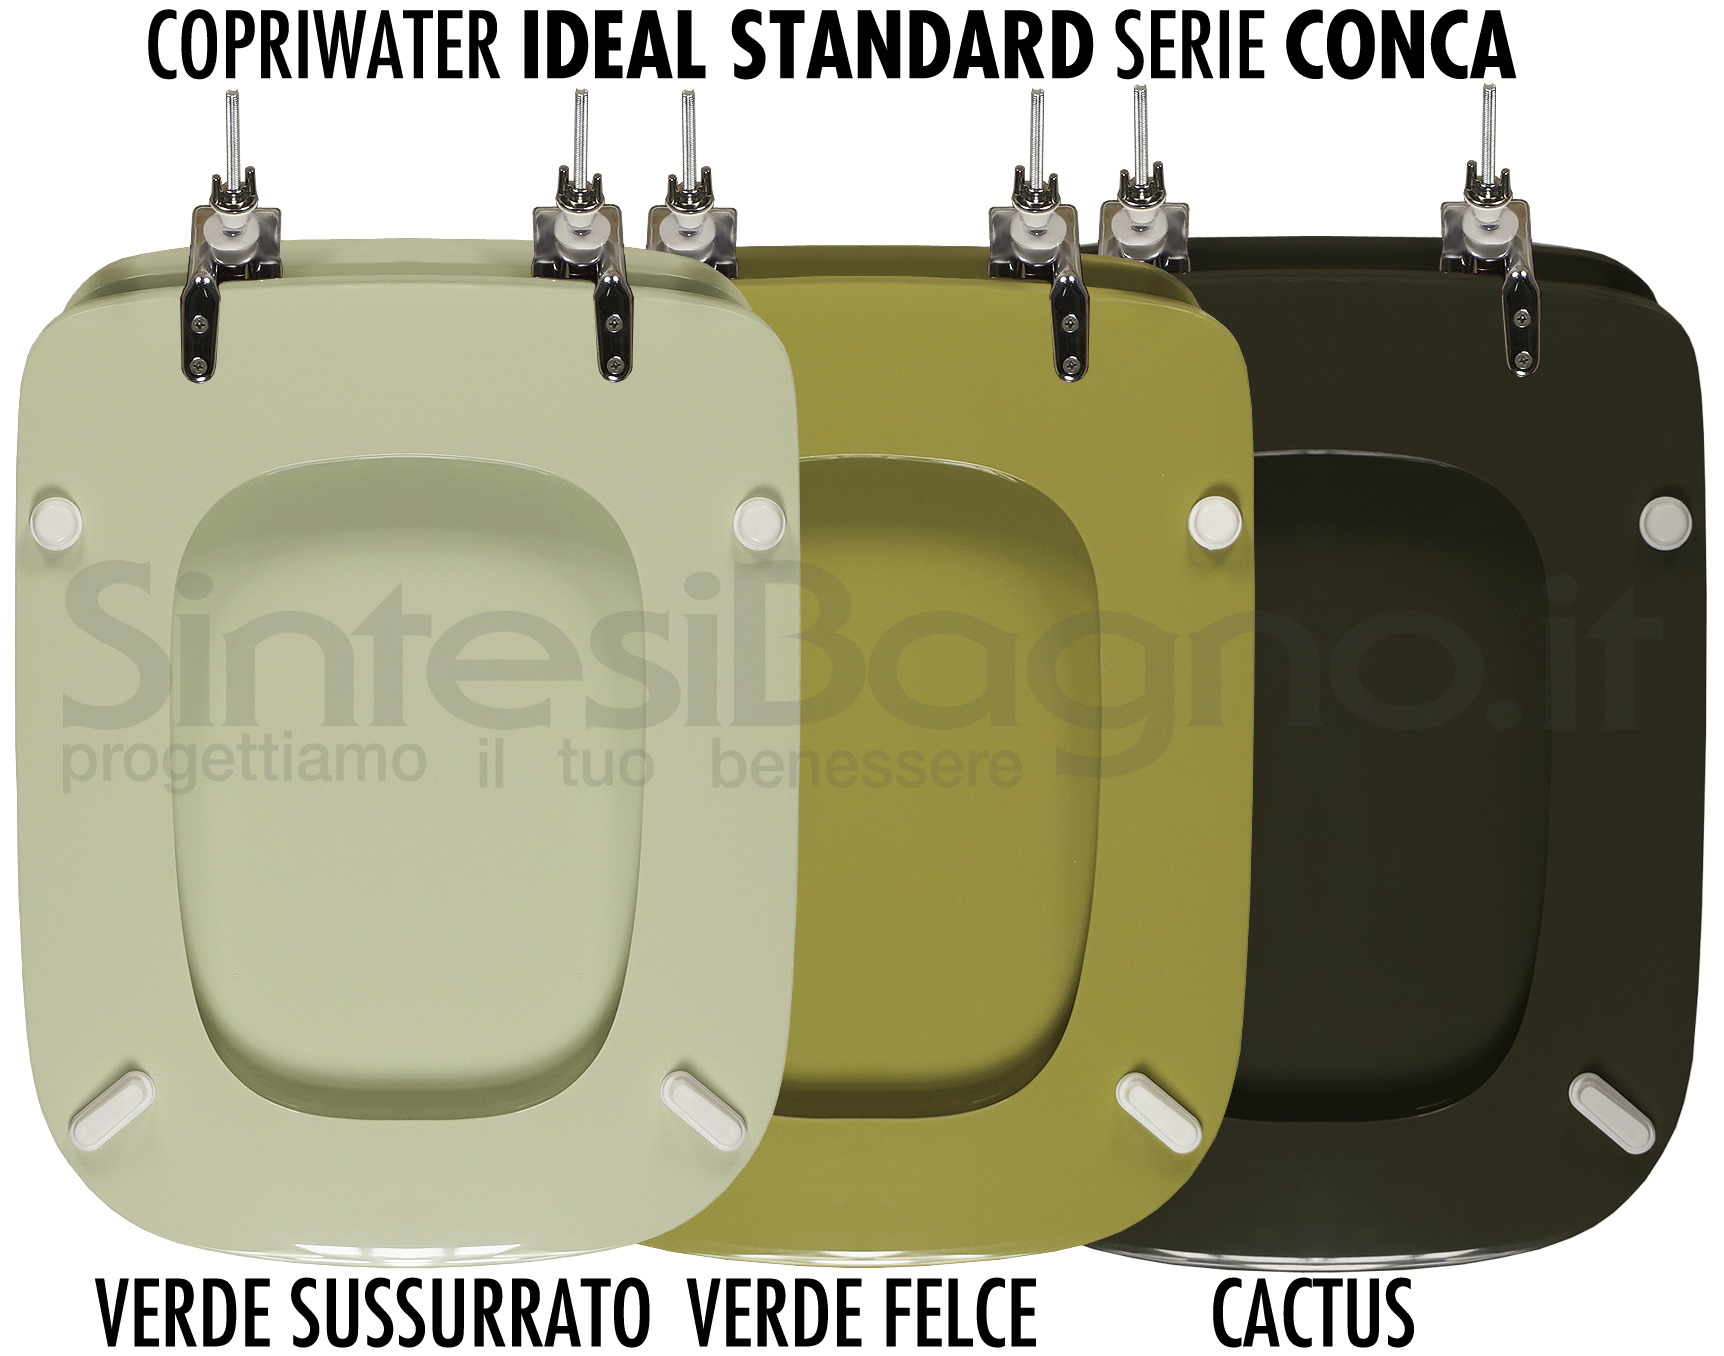 Copriwater Ideal Standard Conca il colore verde